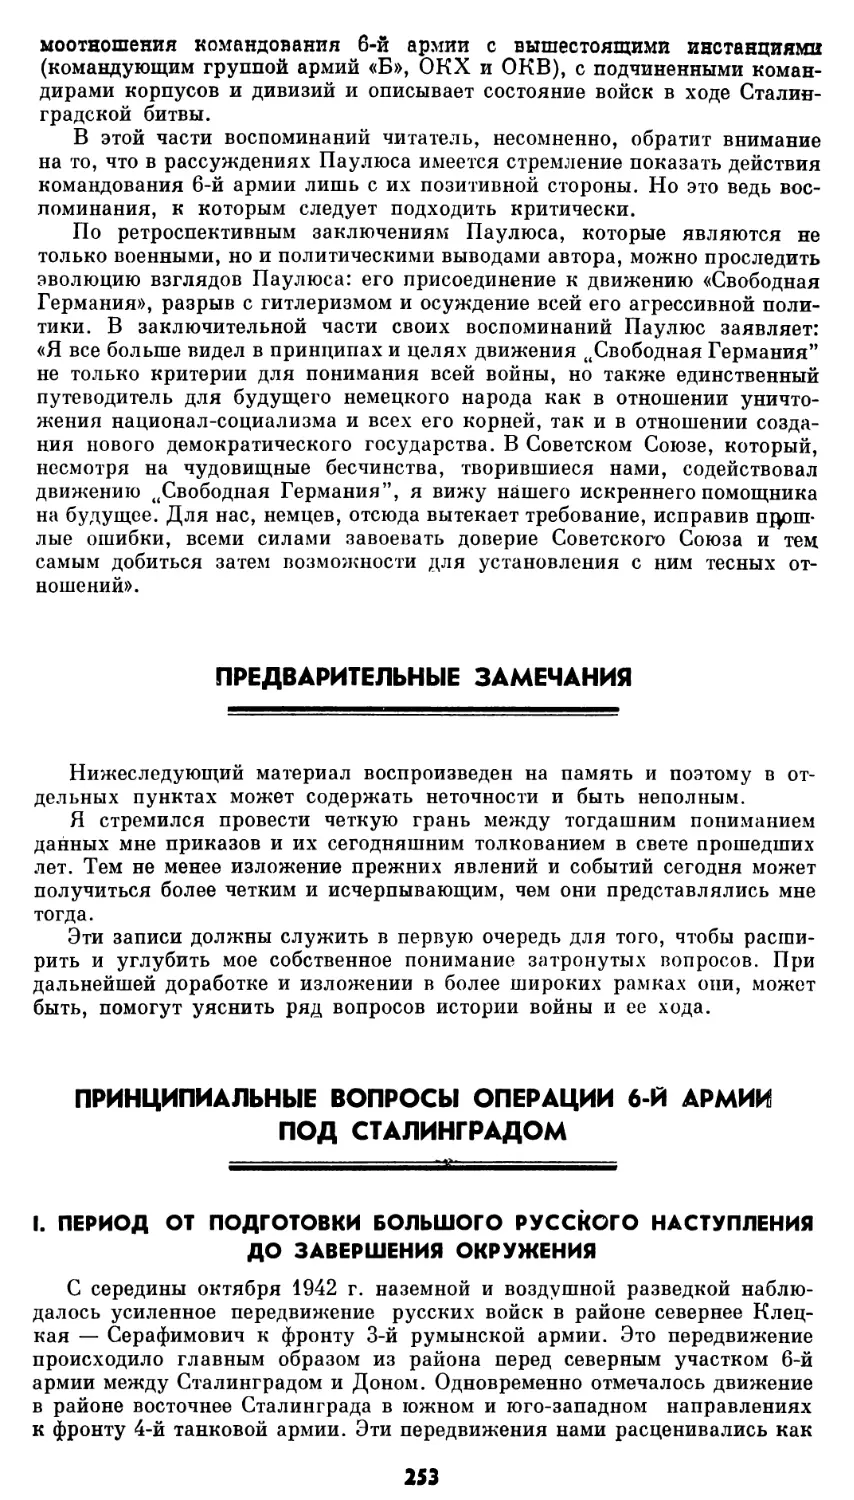 Принципиальные вопросы операции 6-й армии под Сталинградом